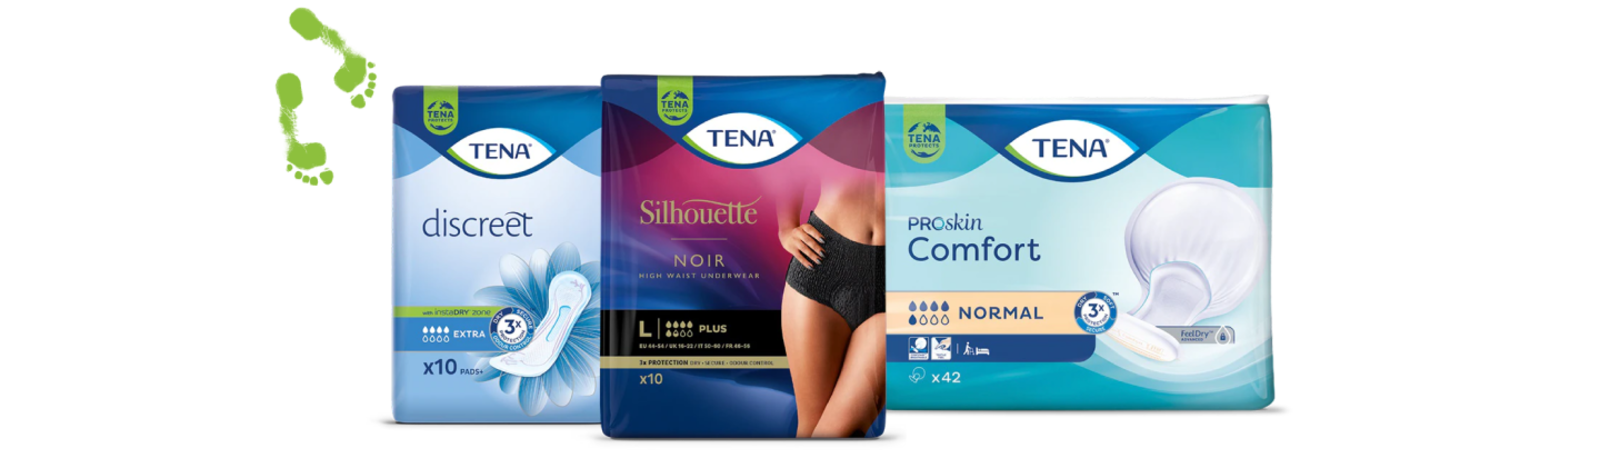 Confezioni di prodotti TENA: TENA Discreet, TENA Silhouette Noir e TENA ProSkin Comfort - TENA